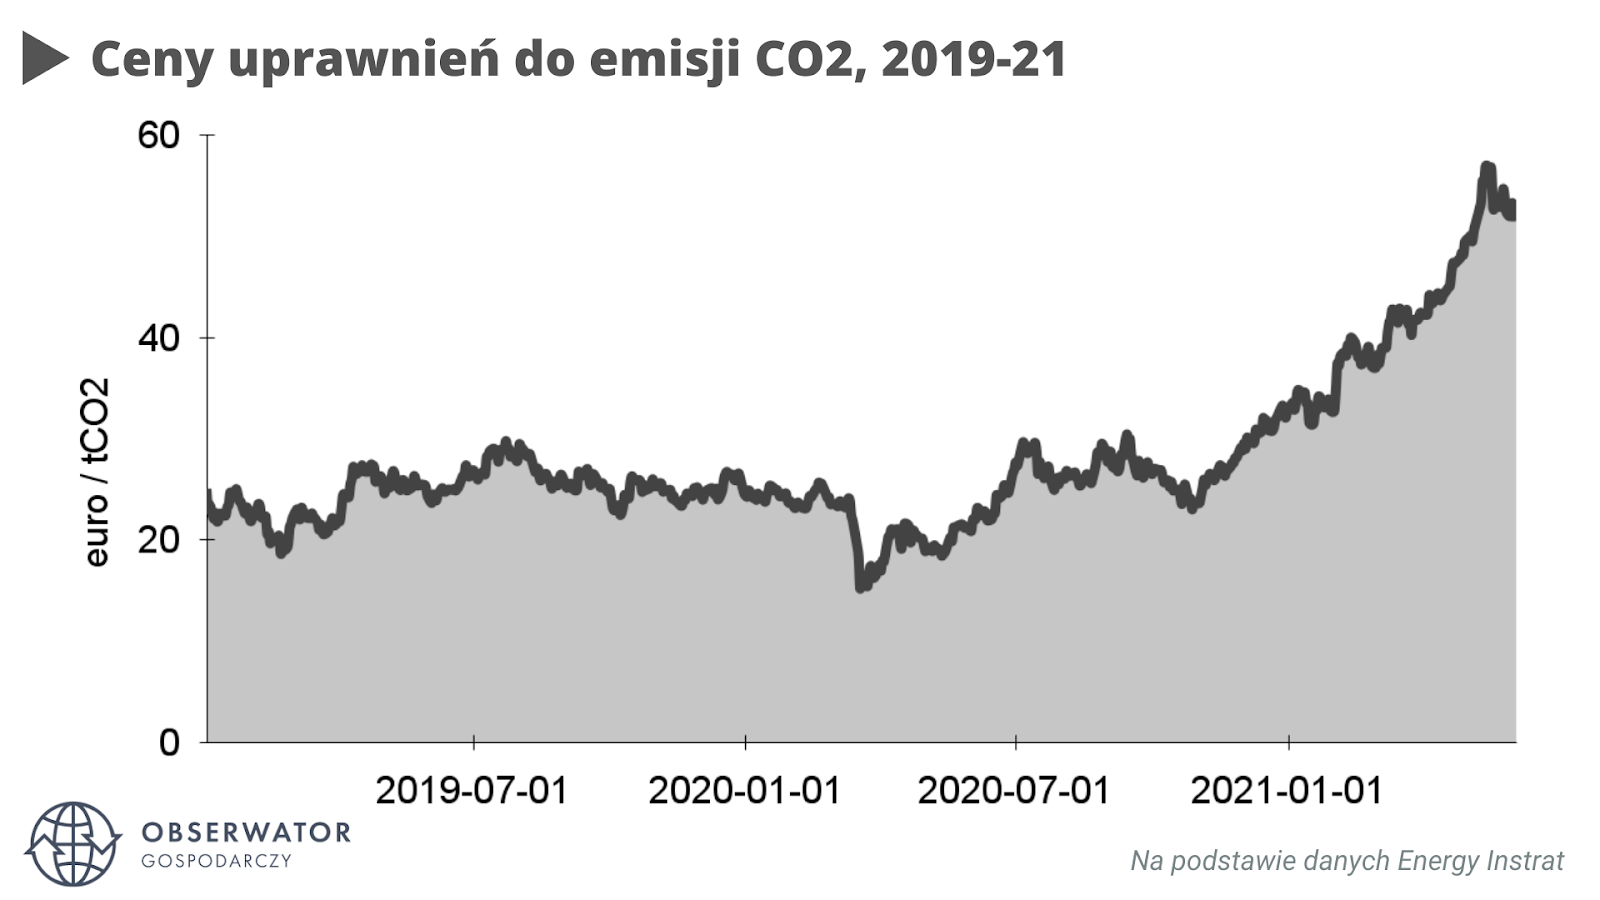 ceny uprawnień do emisji CO2